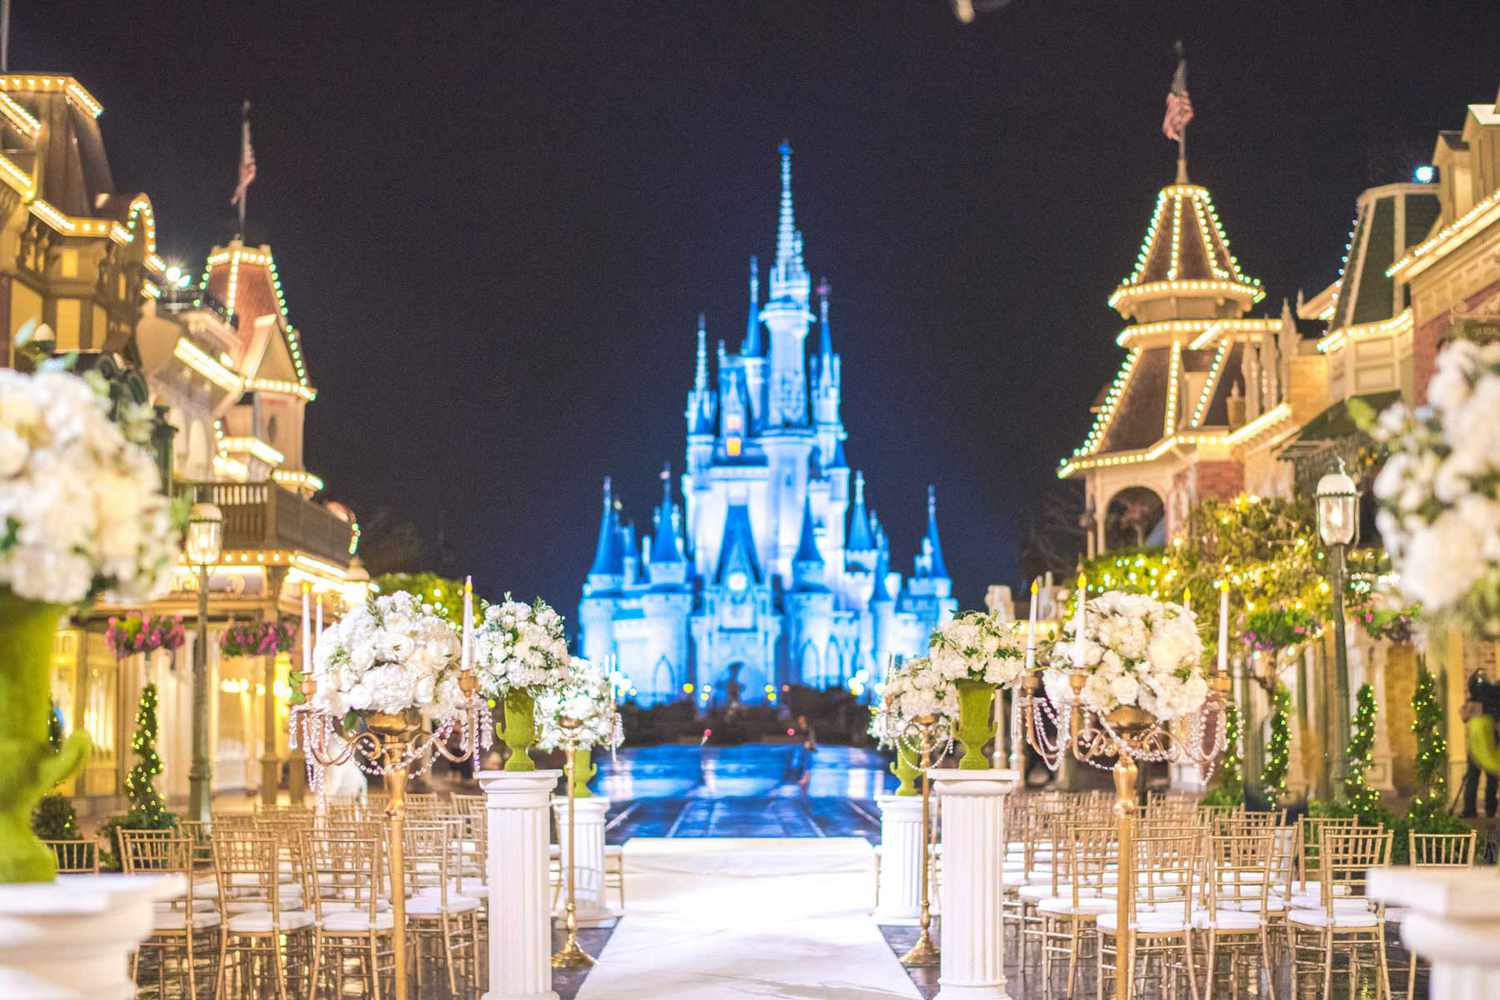 Cérémonie de mariage organisée devant le château de Cendrillon au Magic Kingdom Walt Disney World